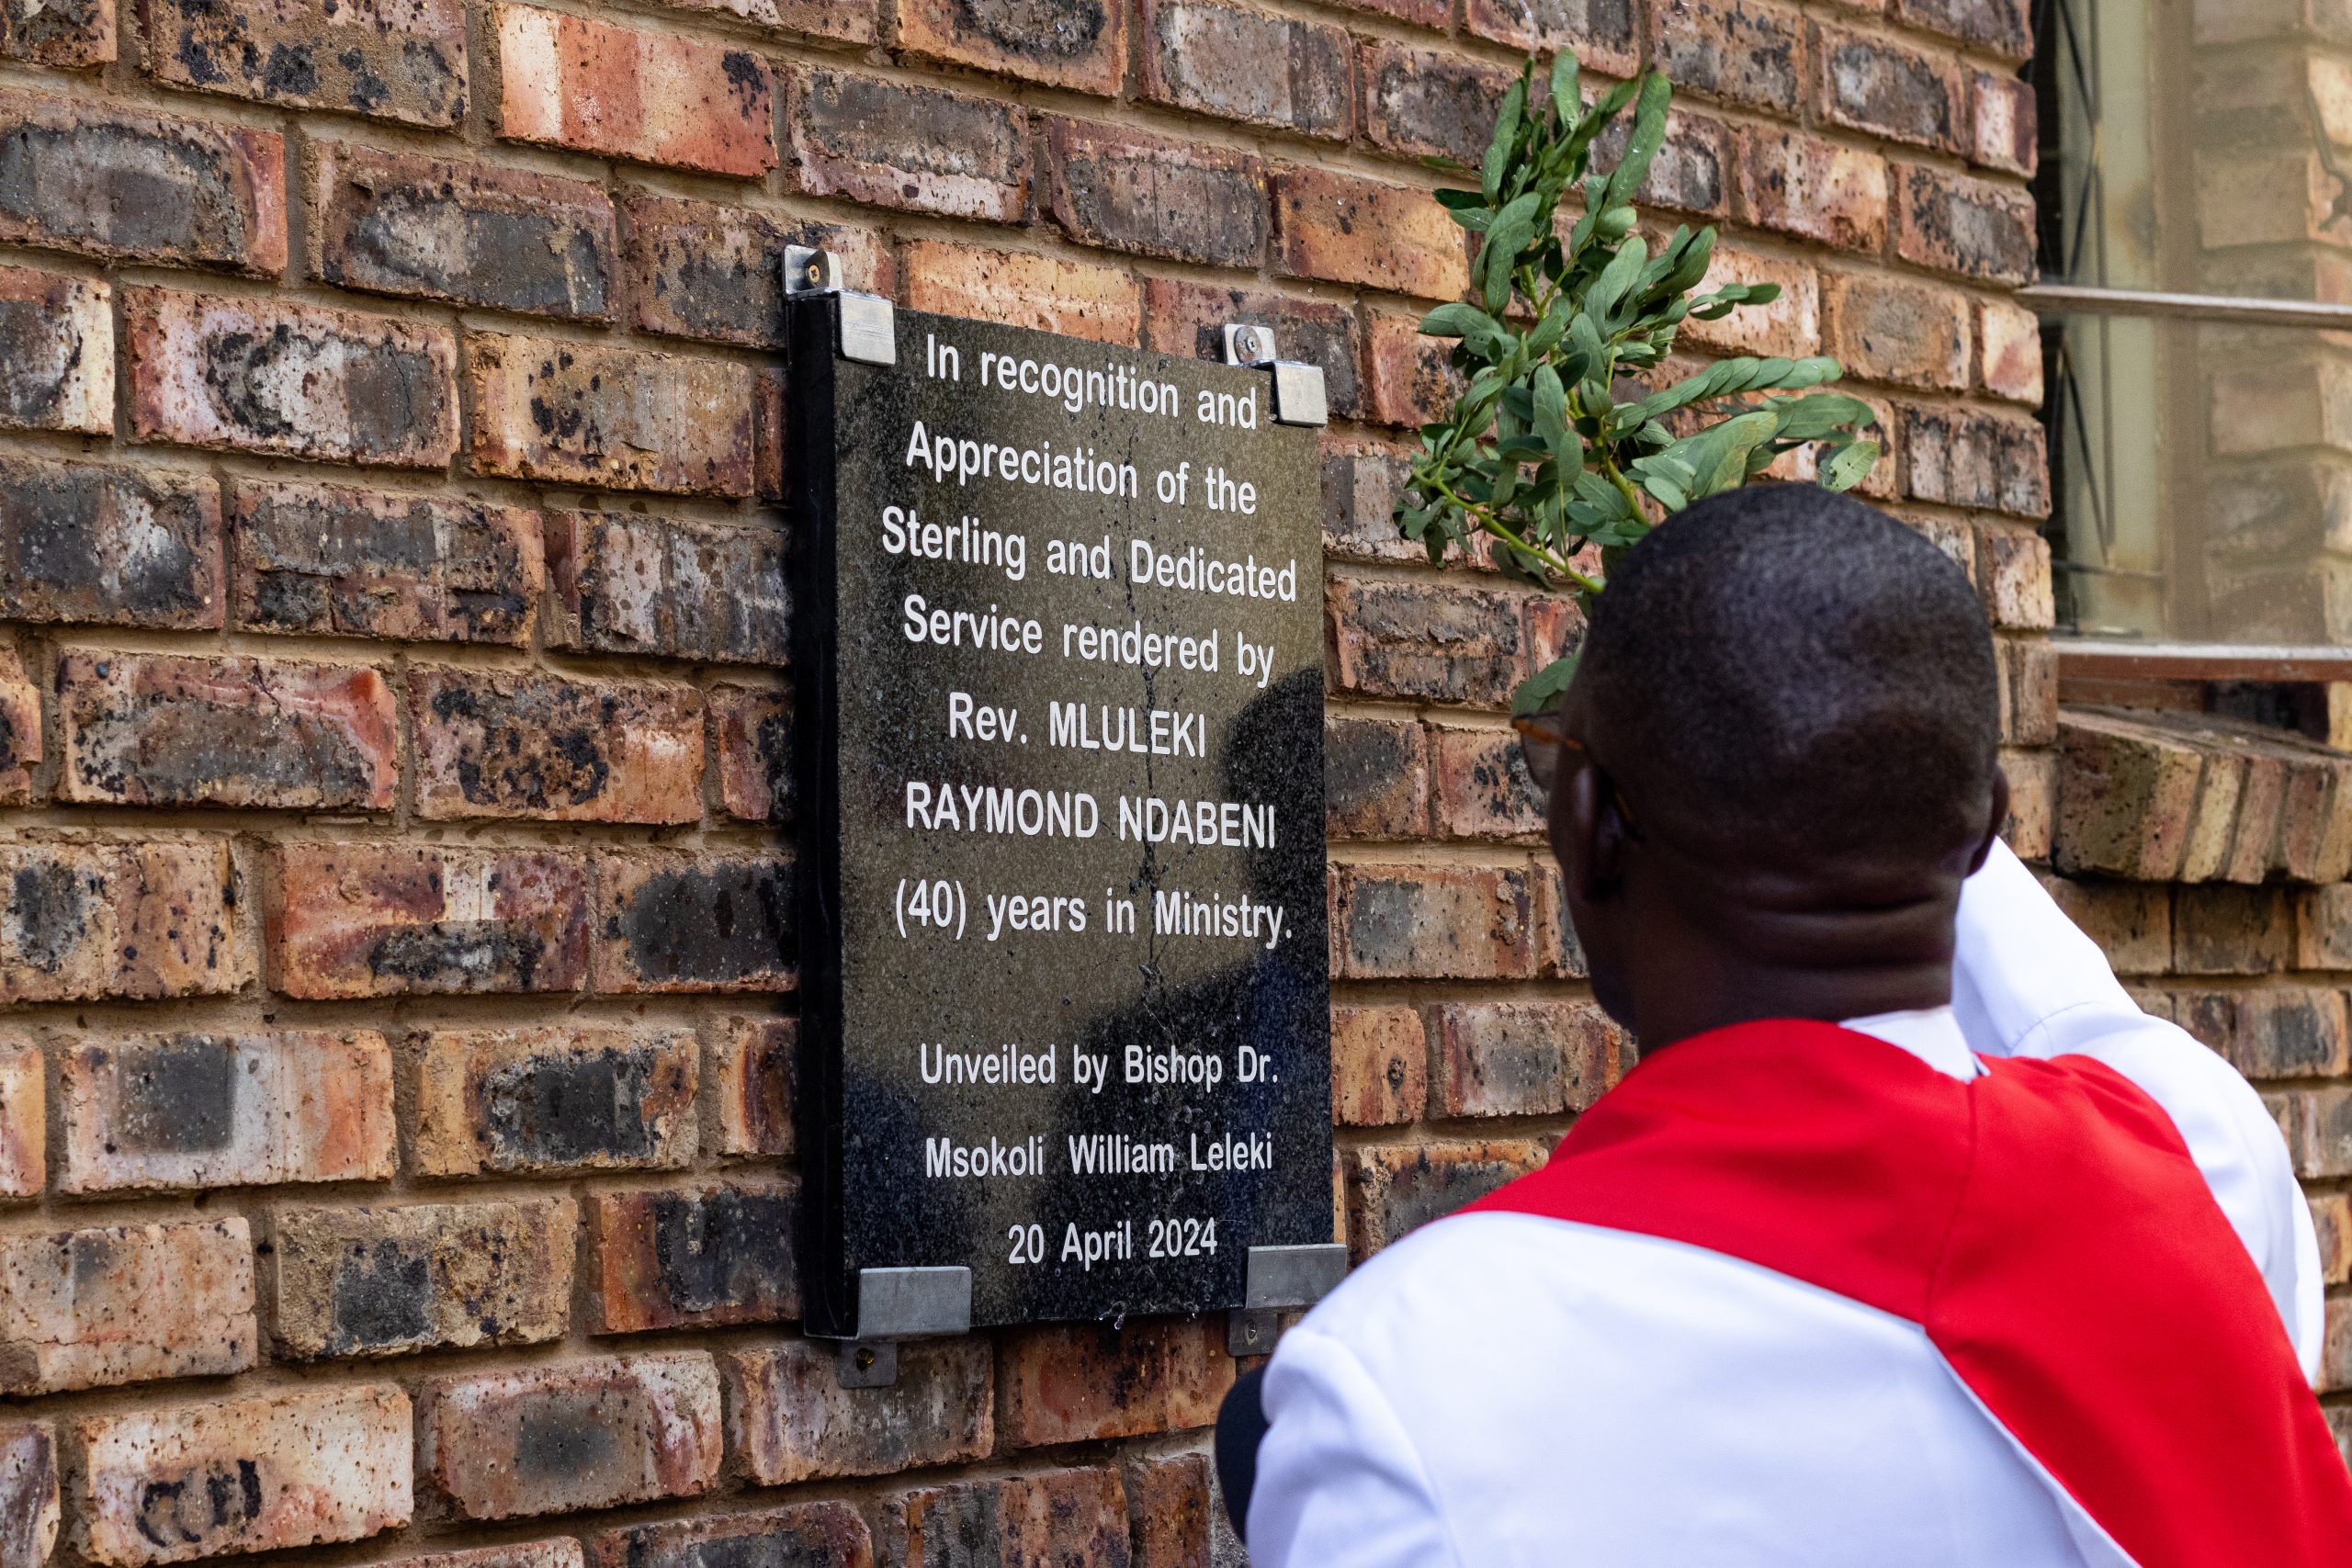 Bishop Dr. Msokoli William Leleki blessing the plaque unveiled for the Mluleki Raymond Ndabeni Hall photo by RIkie Lai